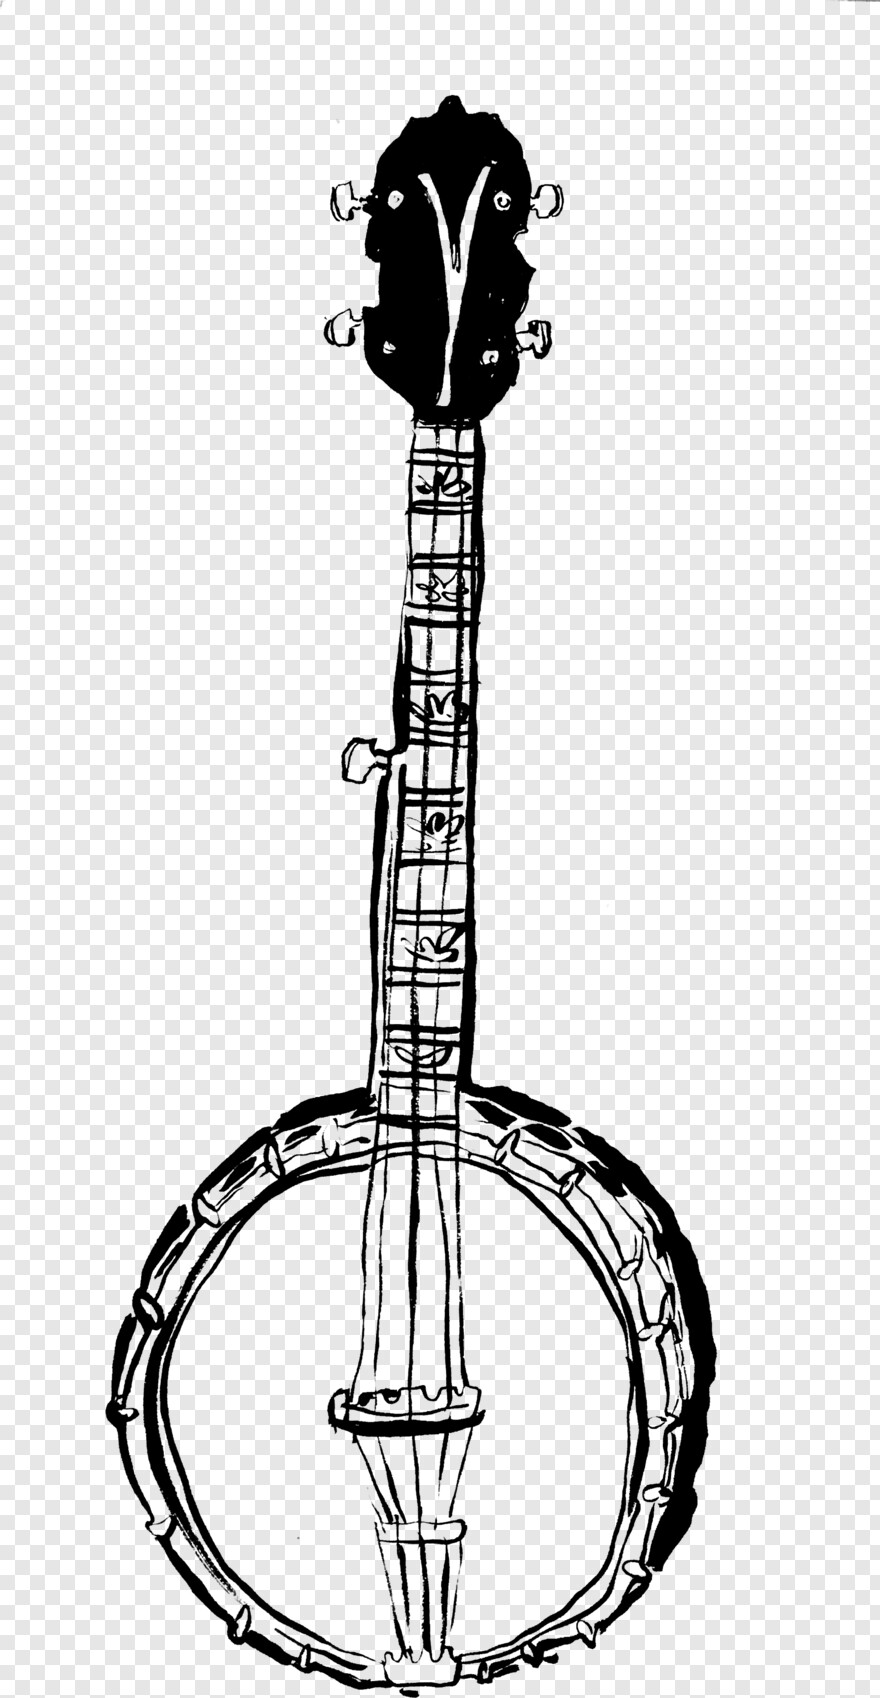 banjo-kazooie # 410958